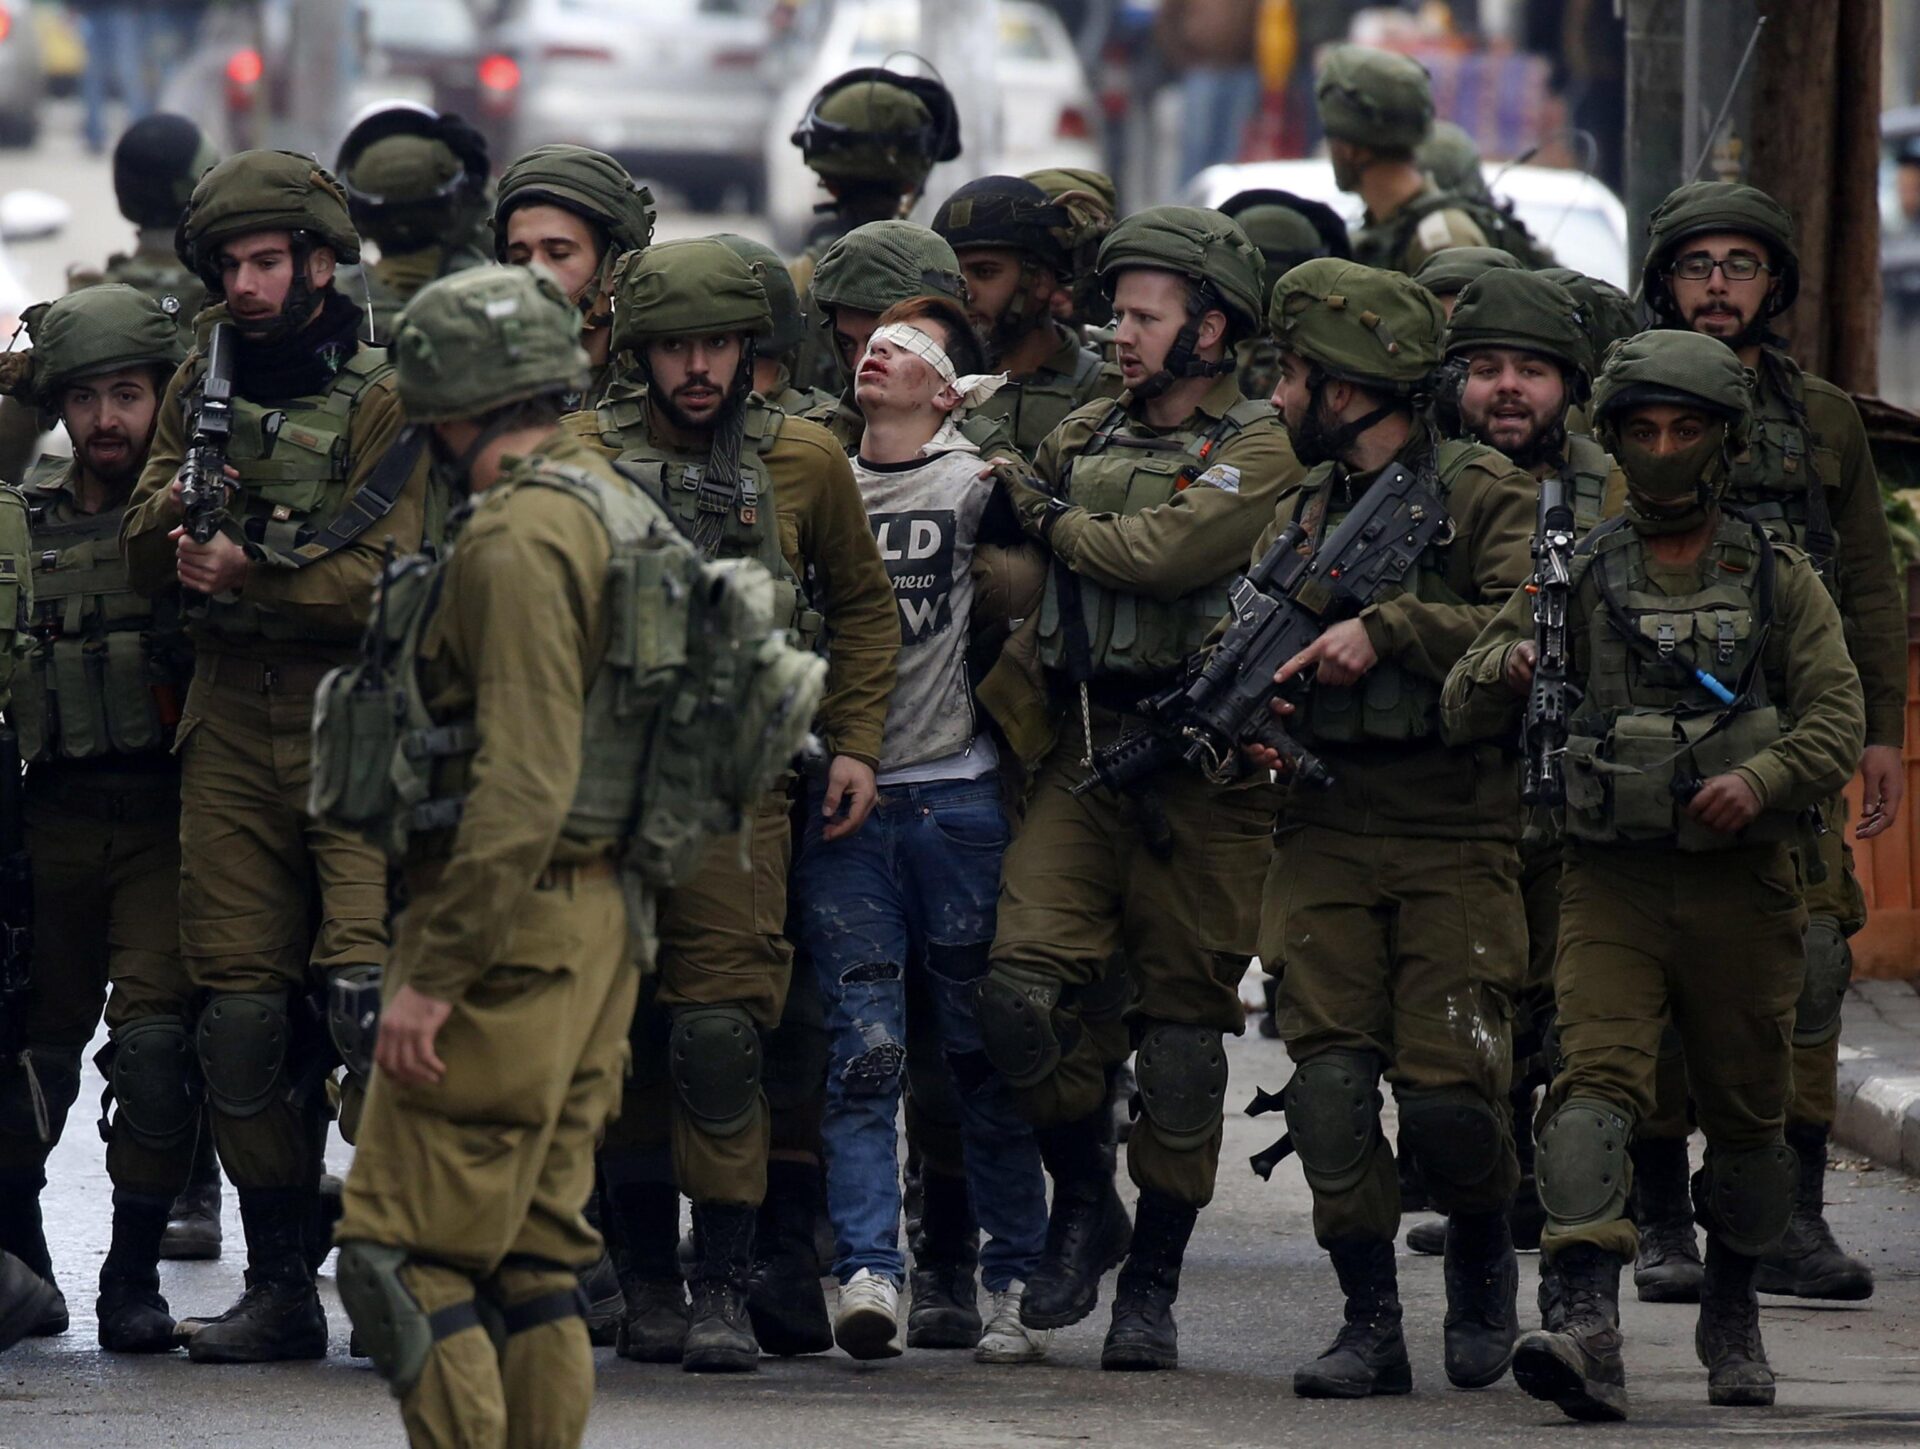 PRIGIONIERI DI ISRAELE  Migliaia di arresti e violenze: nella West Bank la guerra è silenziosa